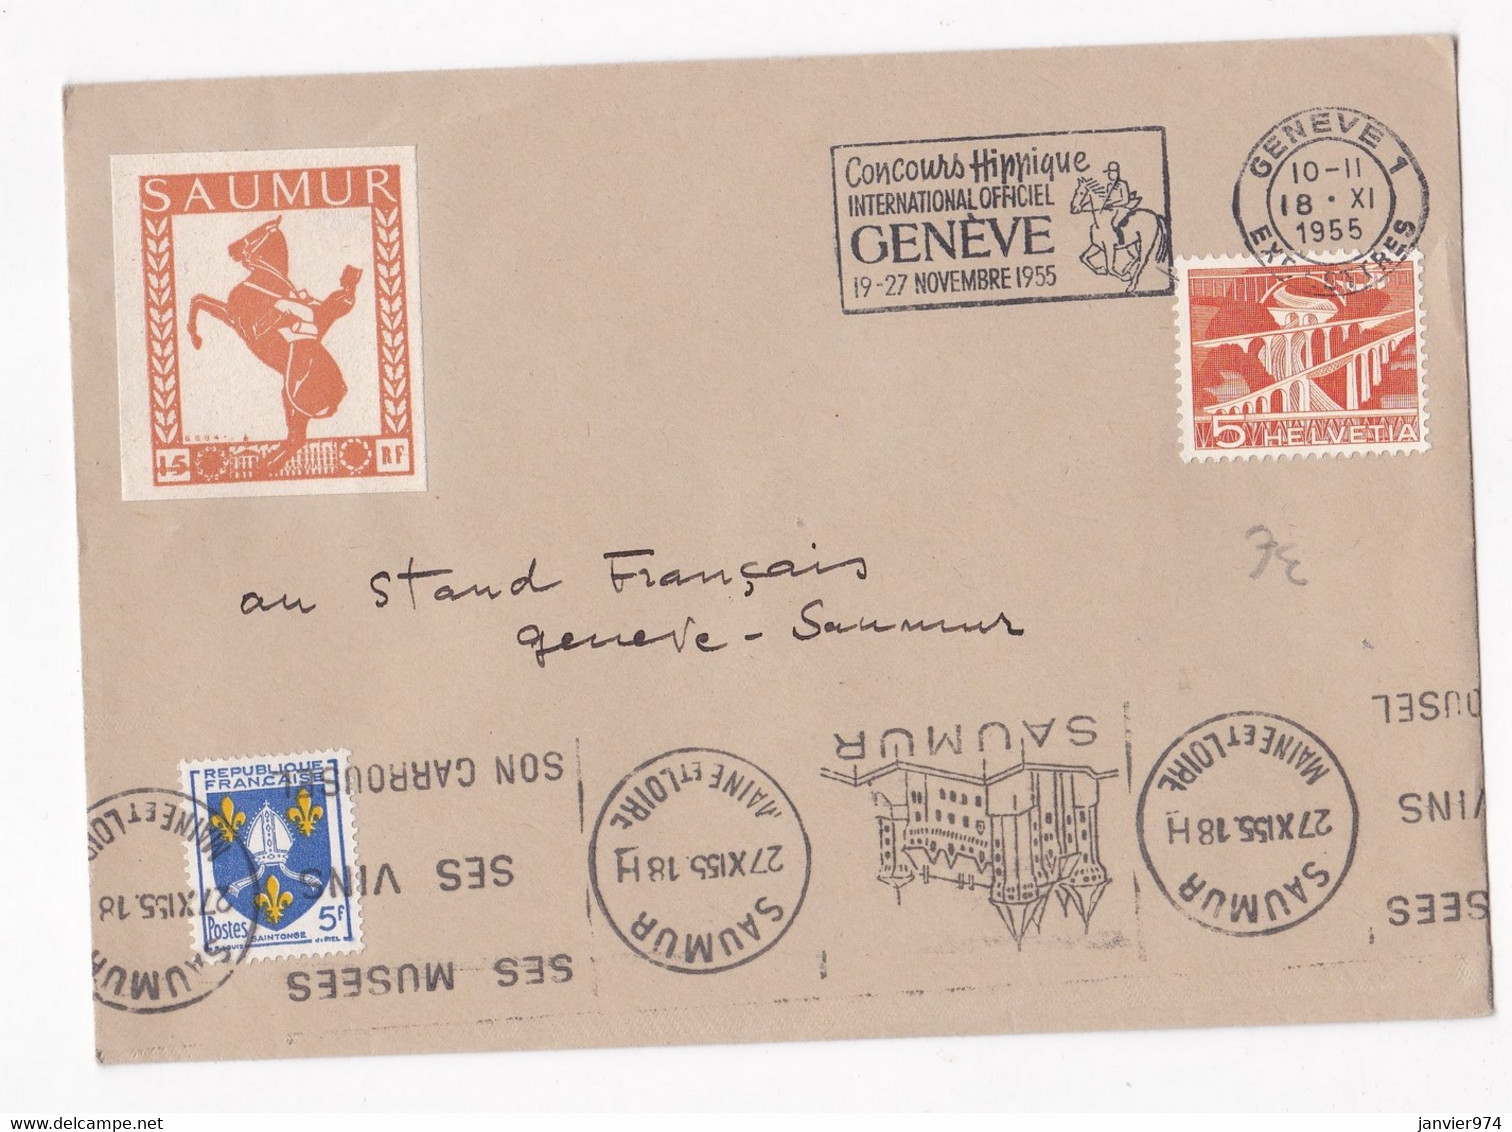 Enveloppe Affranchissement France Suisse 1955 Concours Hippique De Genève. Vignette Saumur. - Hippisme